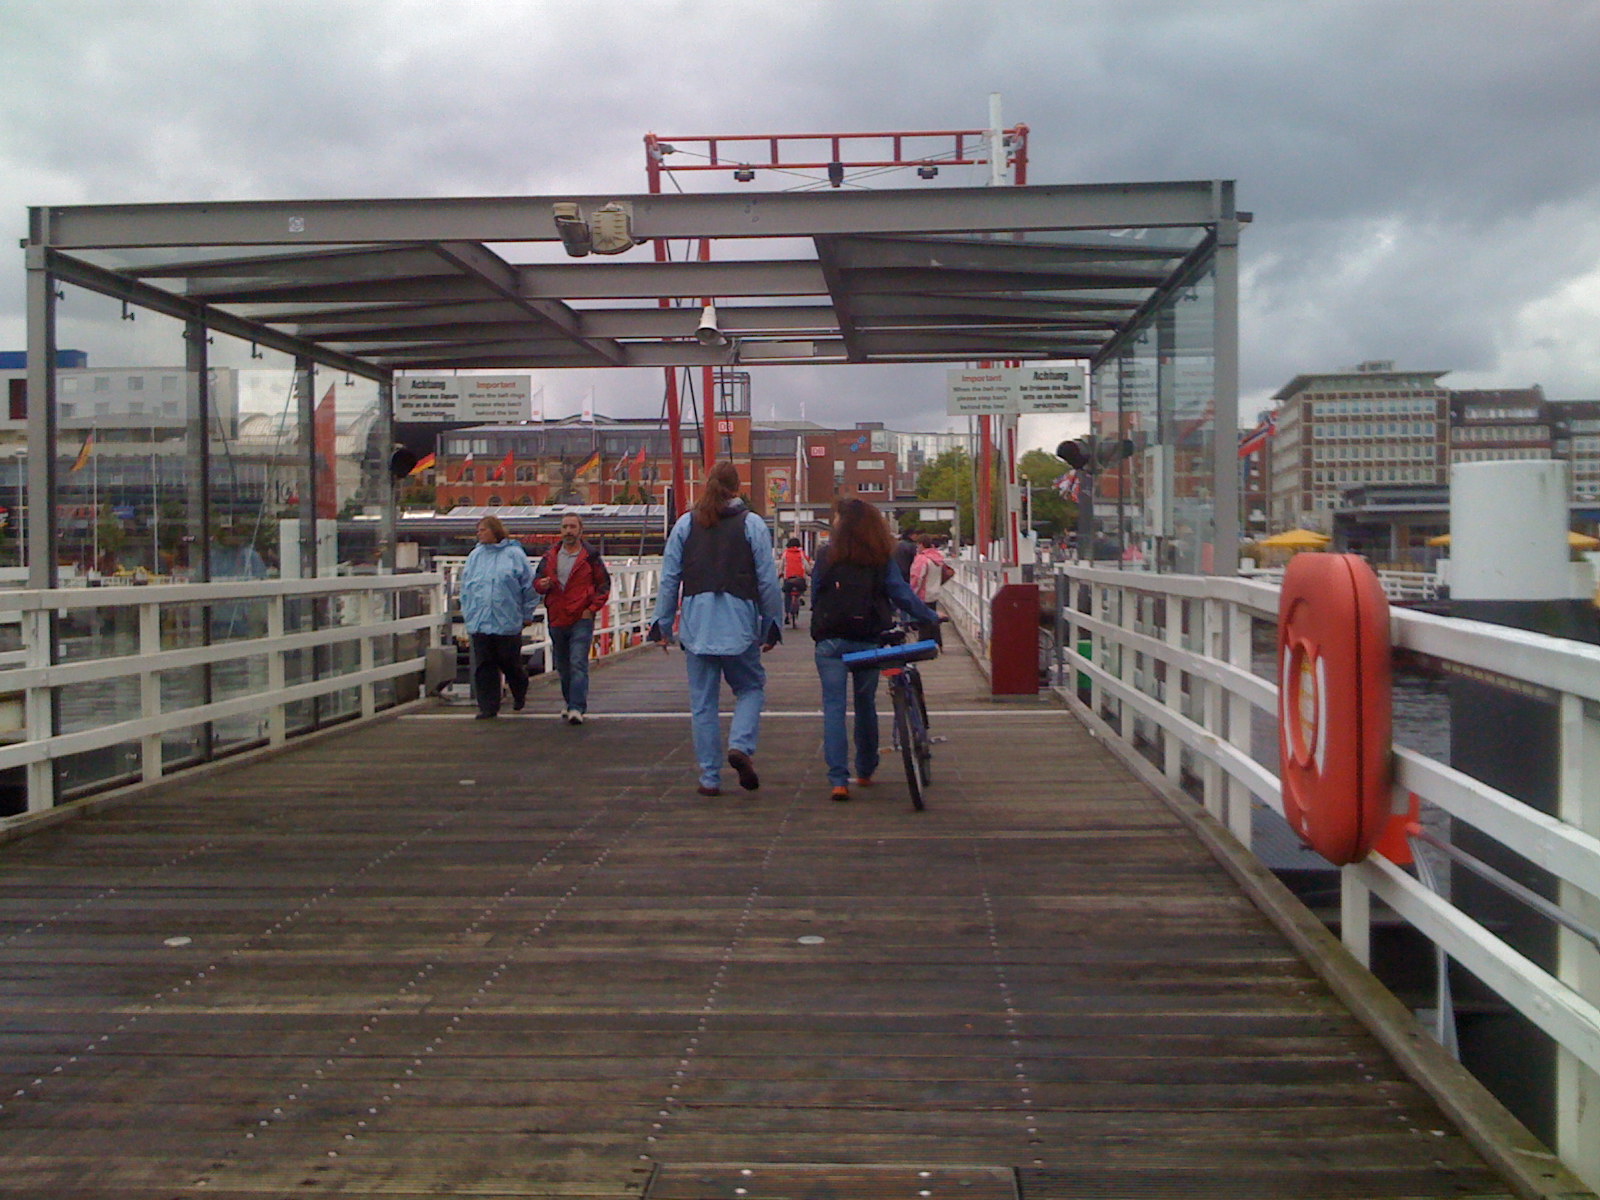 Kiel bridge